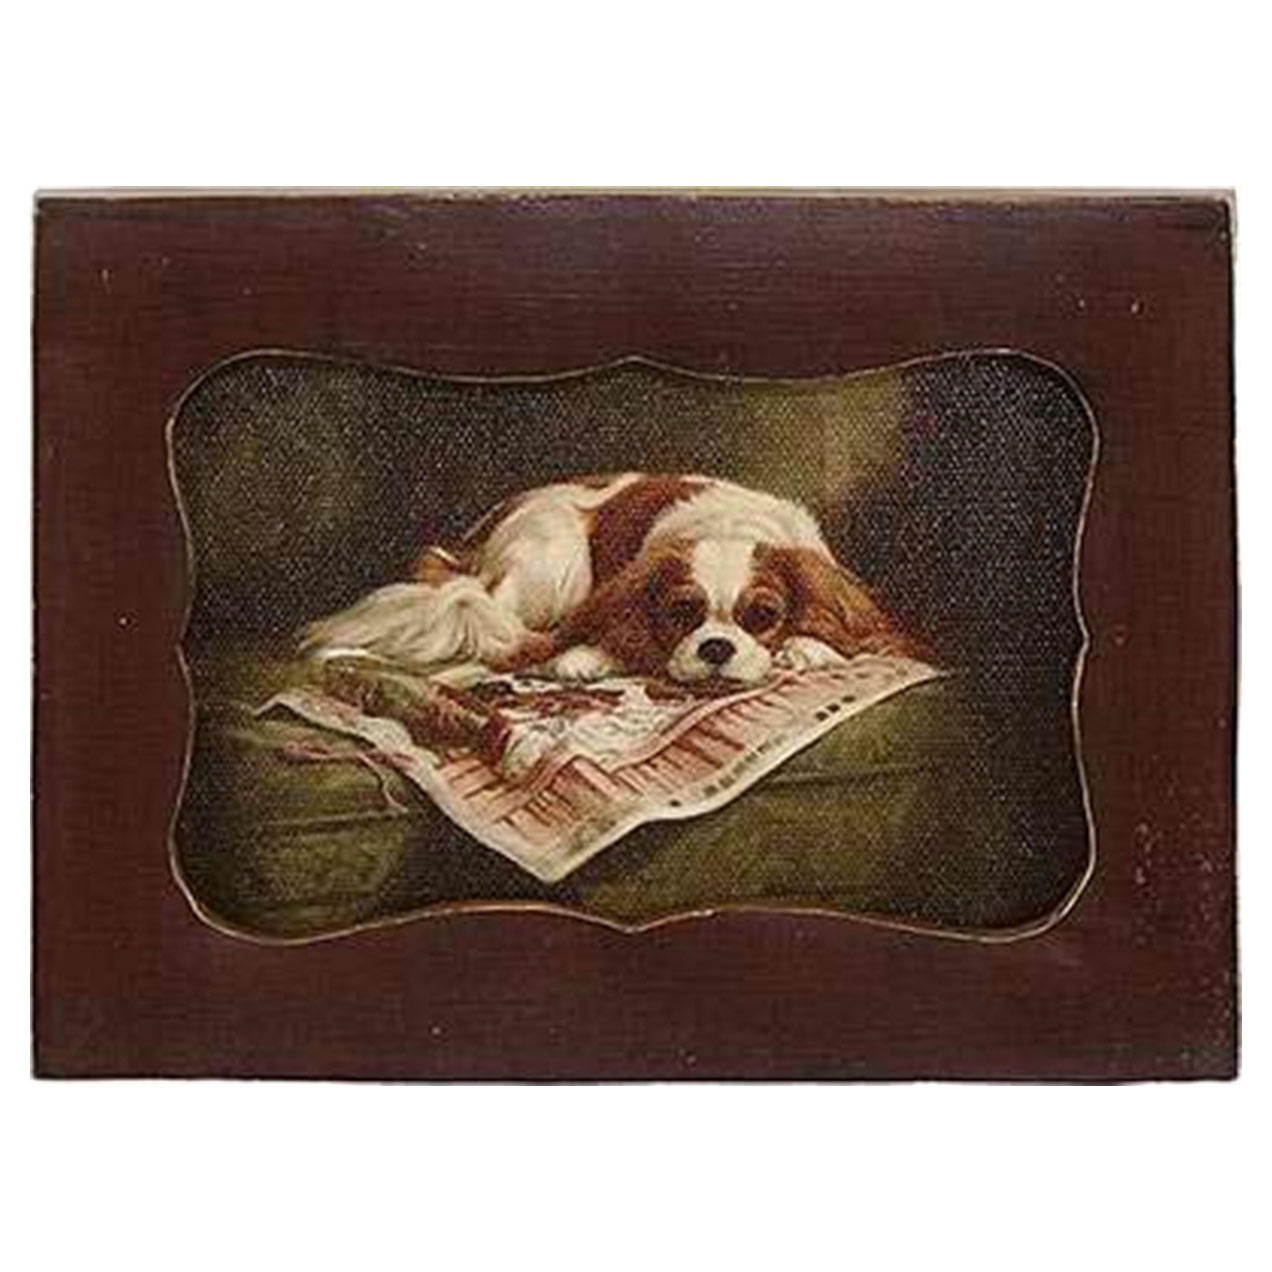 Картина в прямоугольной раме Glasar, спящая собака, масло, 10x2x12 см картина в раме glasar масло 11x2x13см